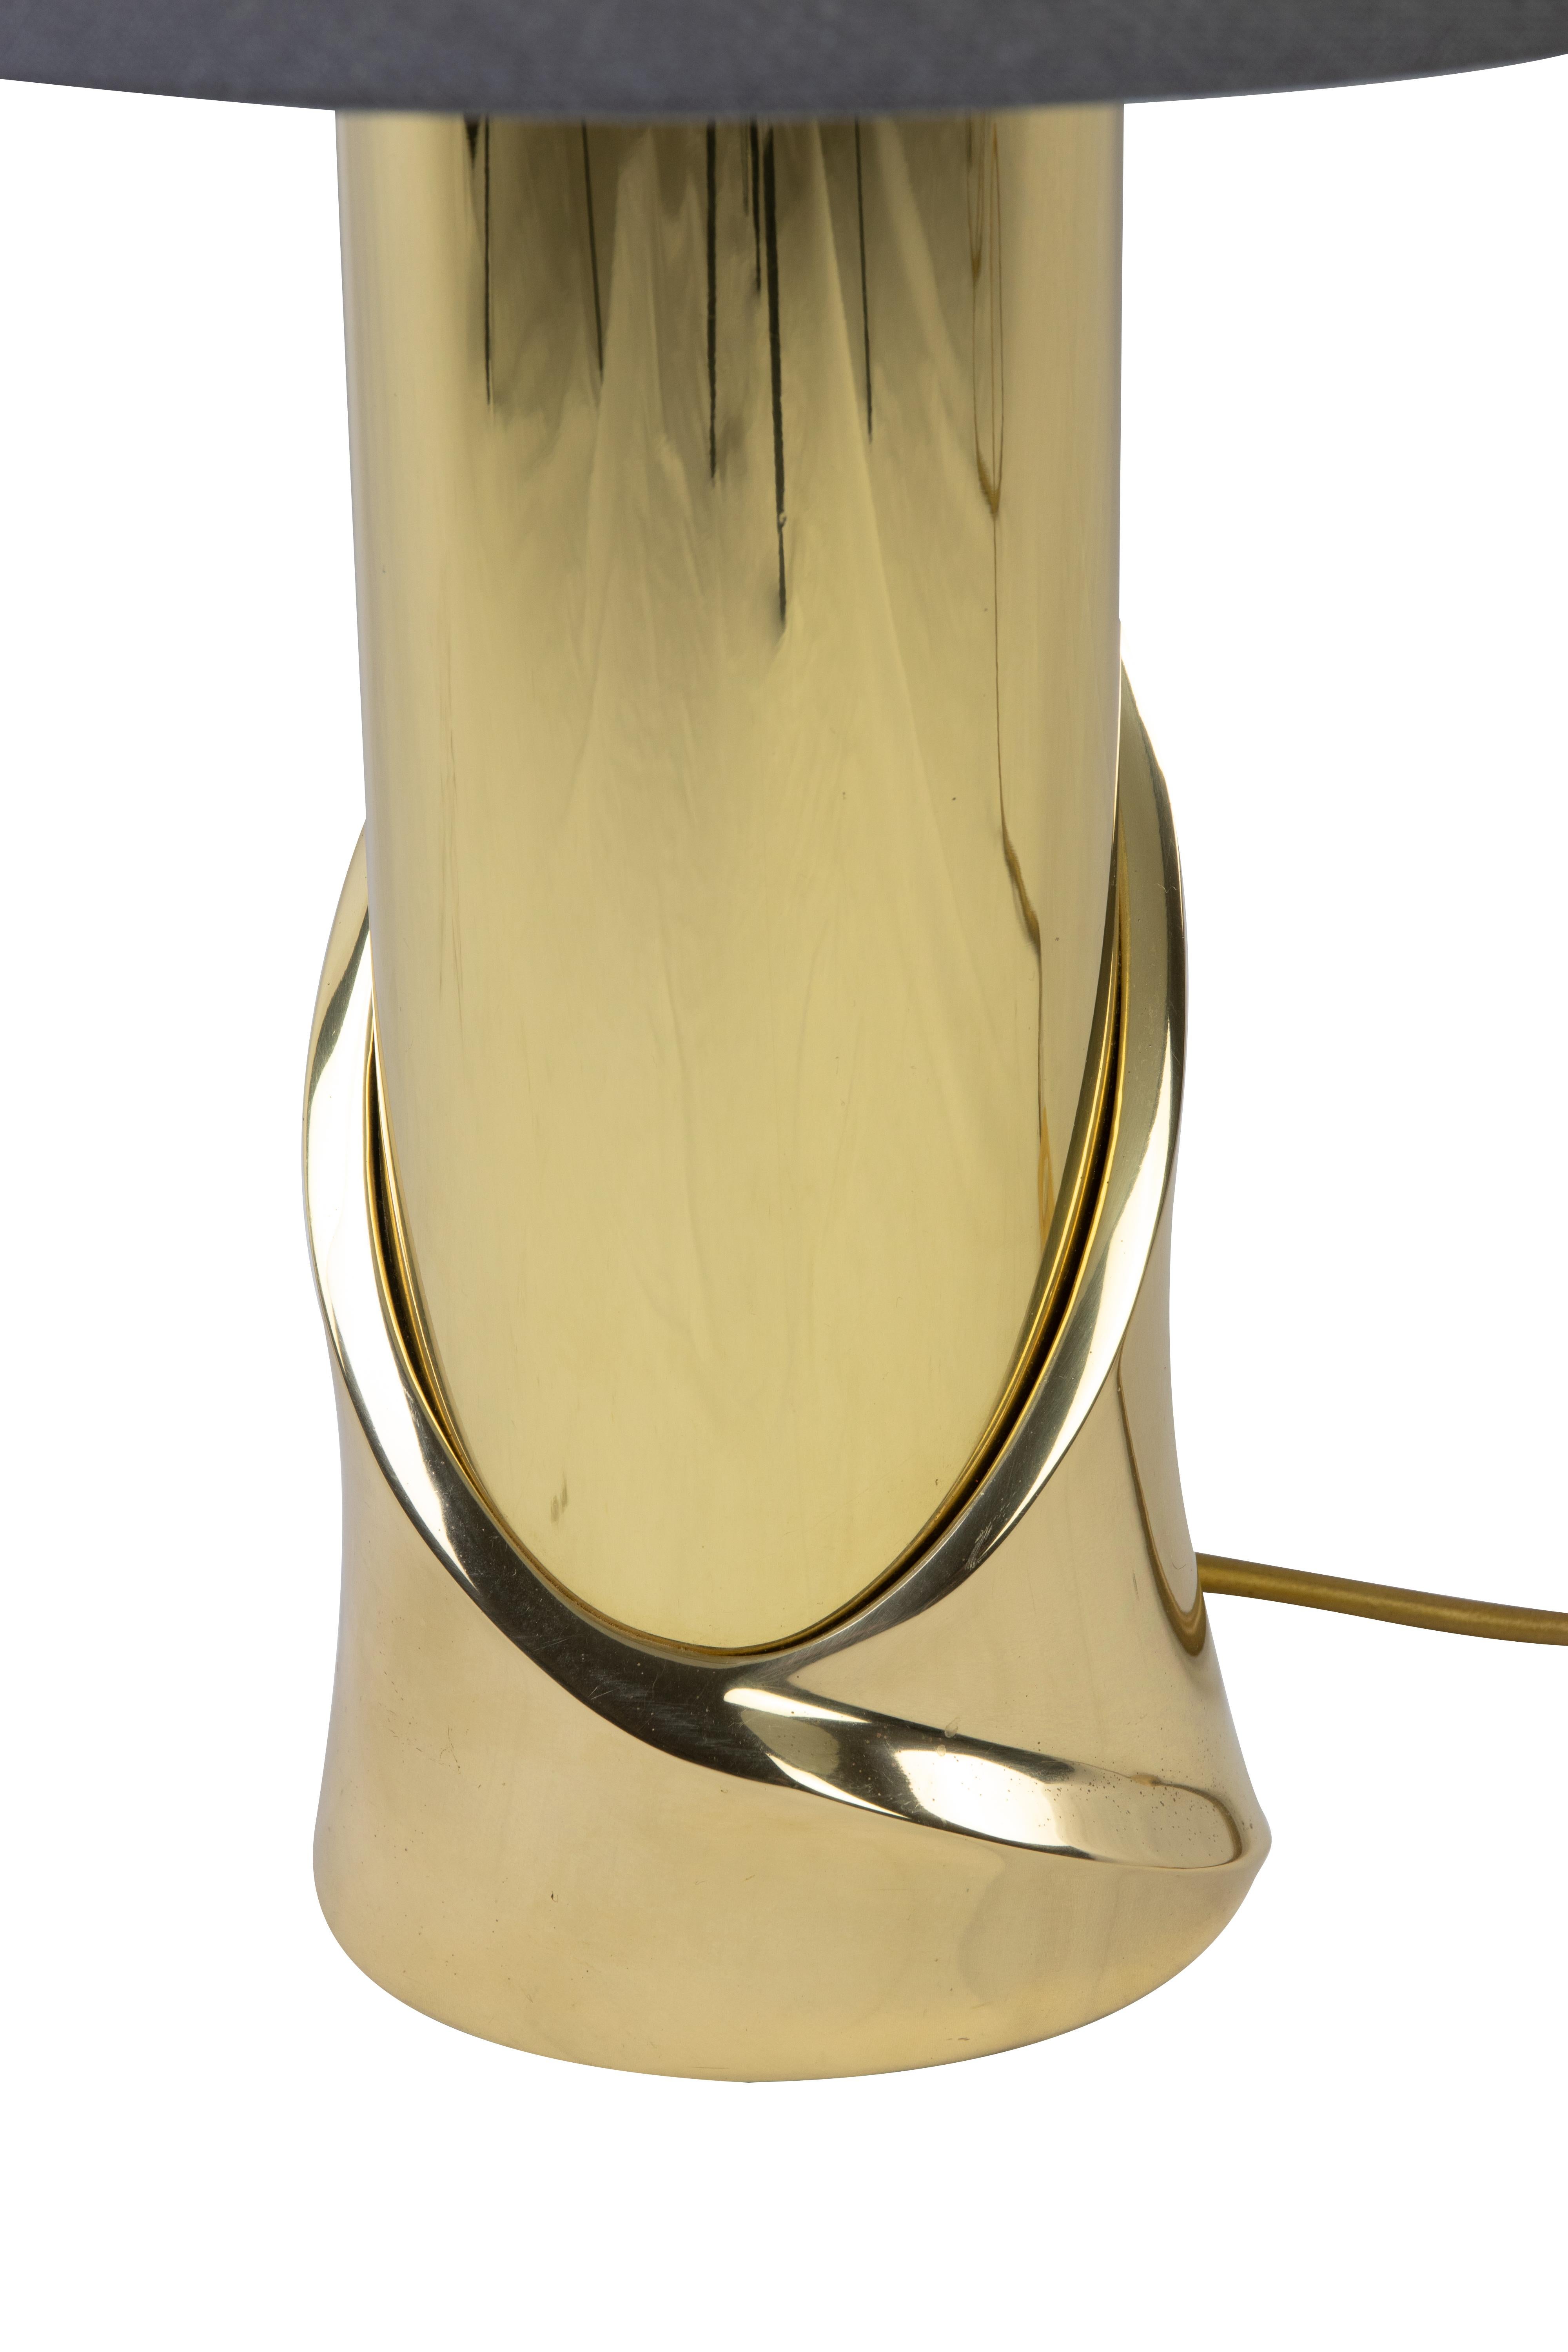 Italian Table Lamp by Luciano Frigerio, Prod. Frigerio di Desio, 1970s For Sale